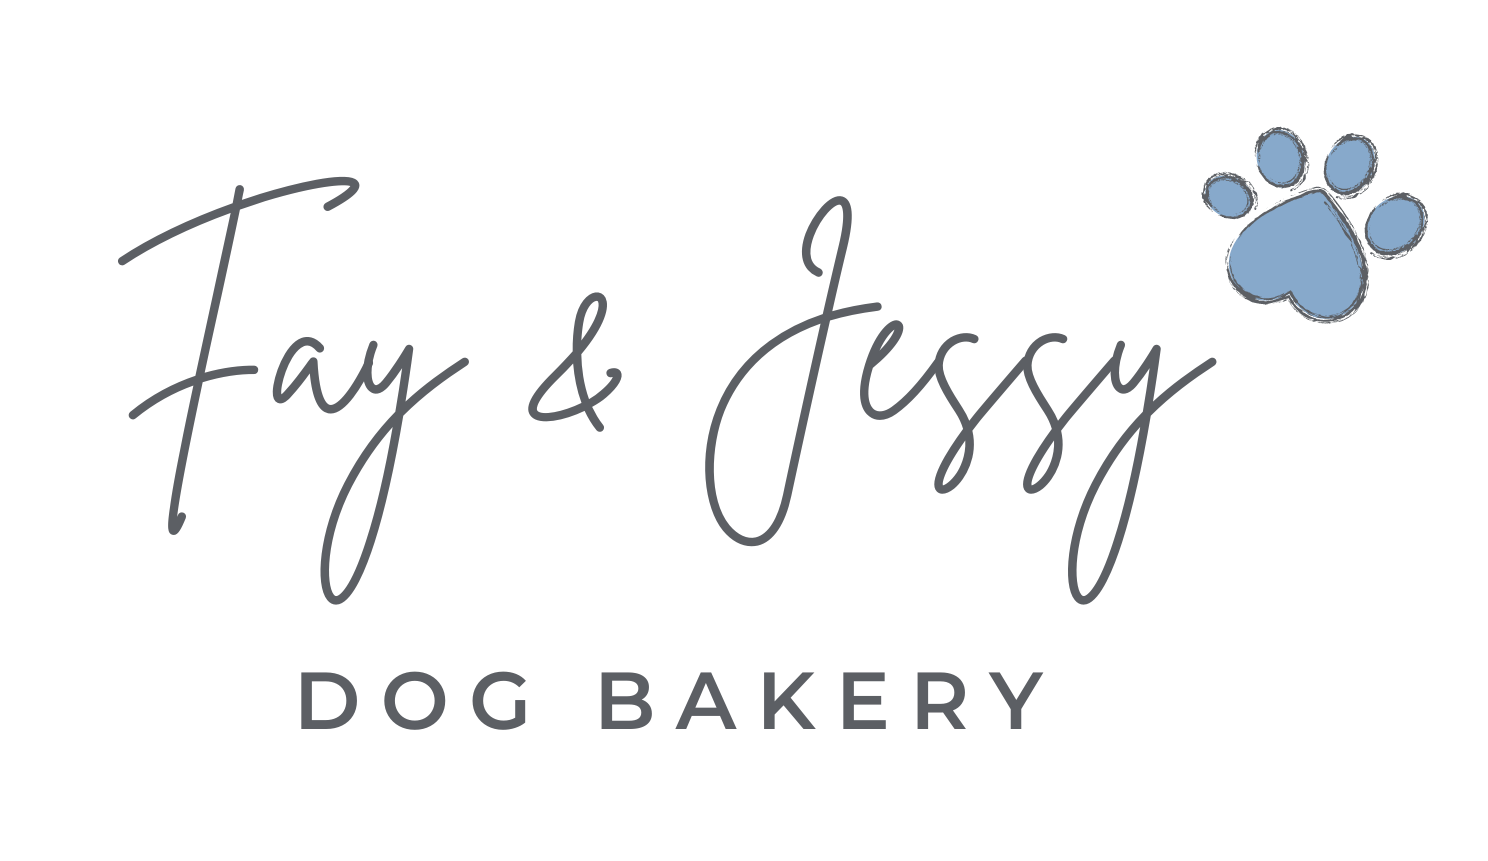 Fay & Jessy Dog Bakery